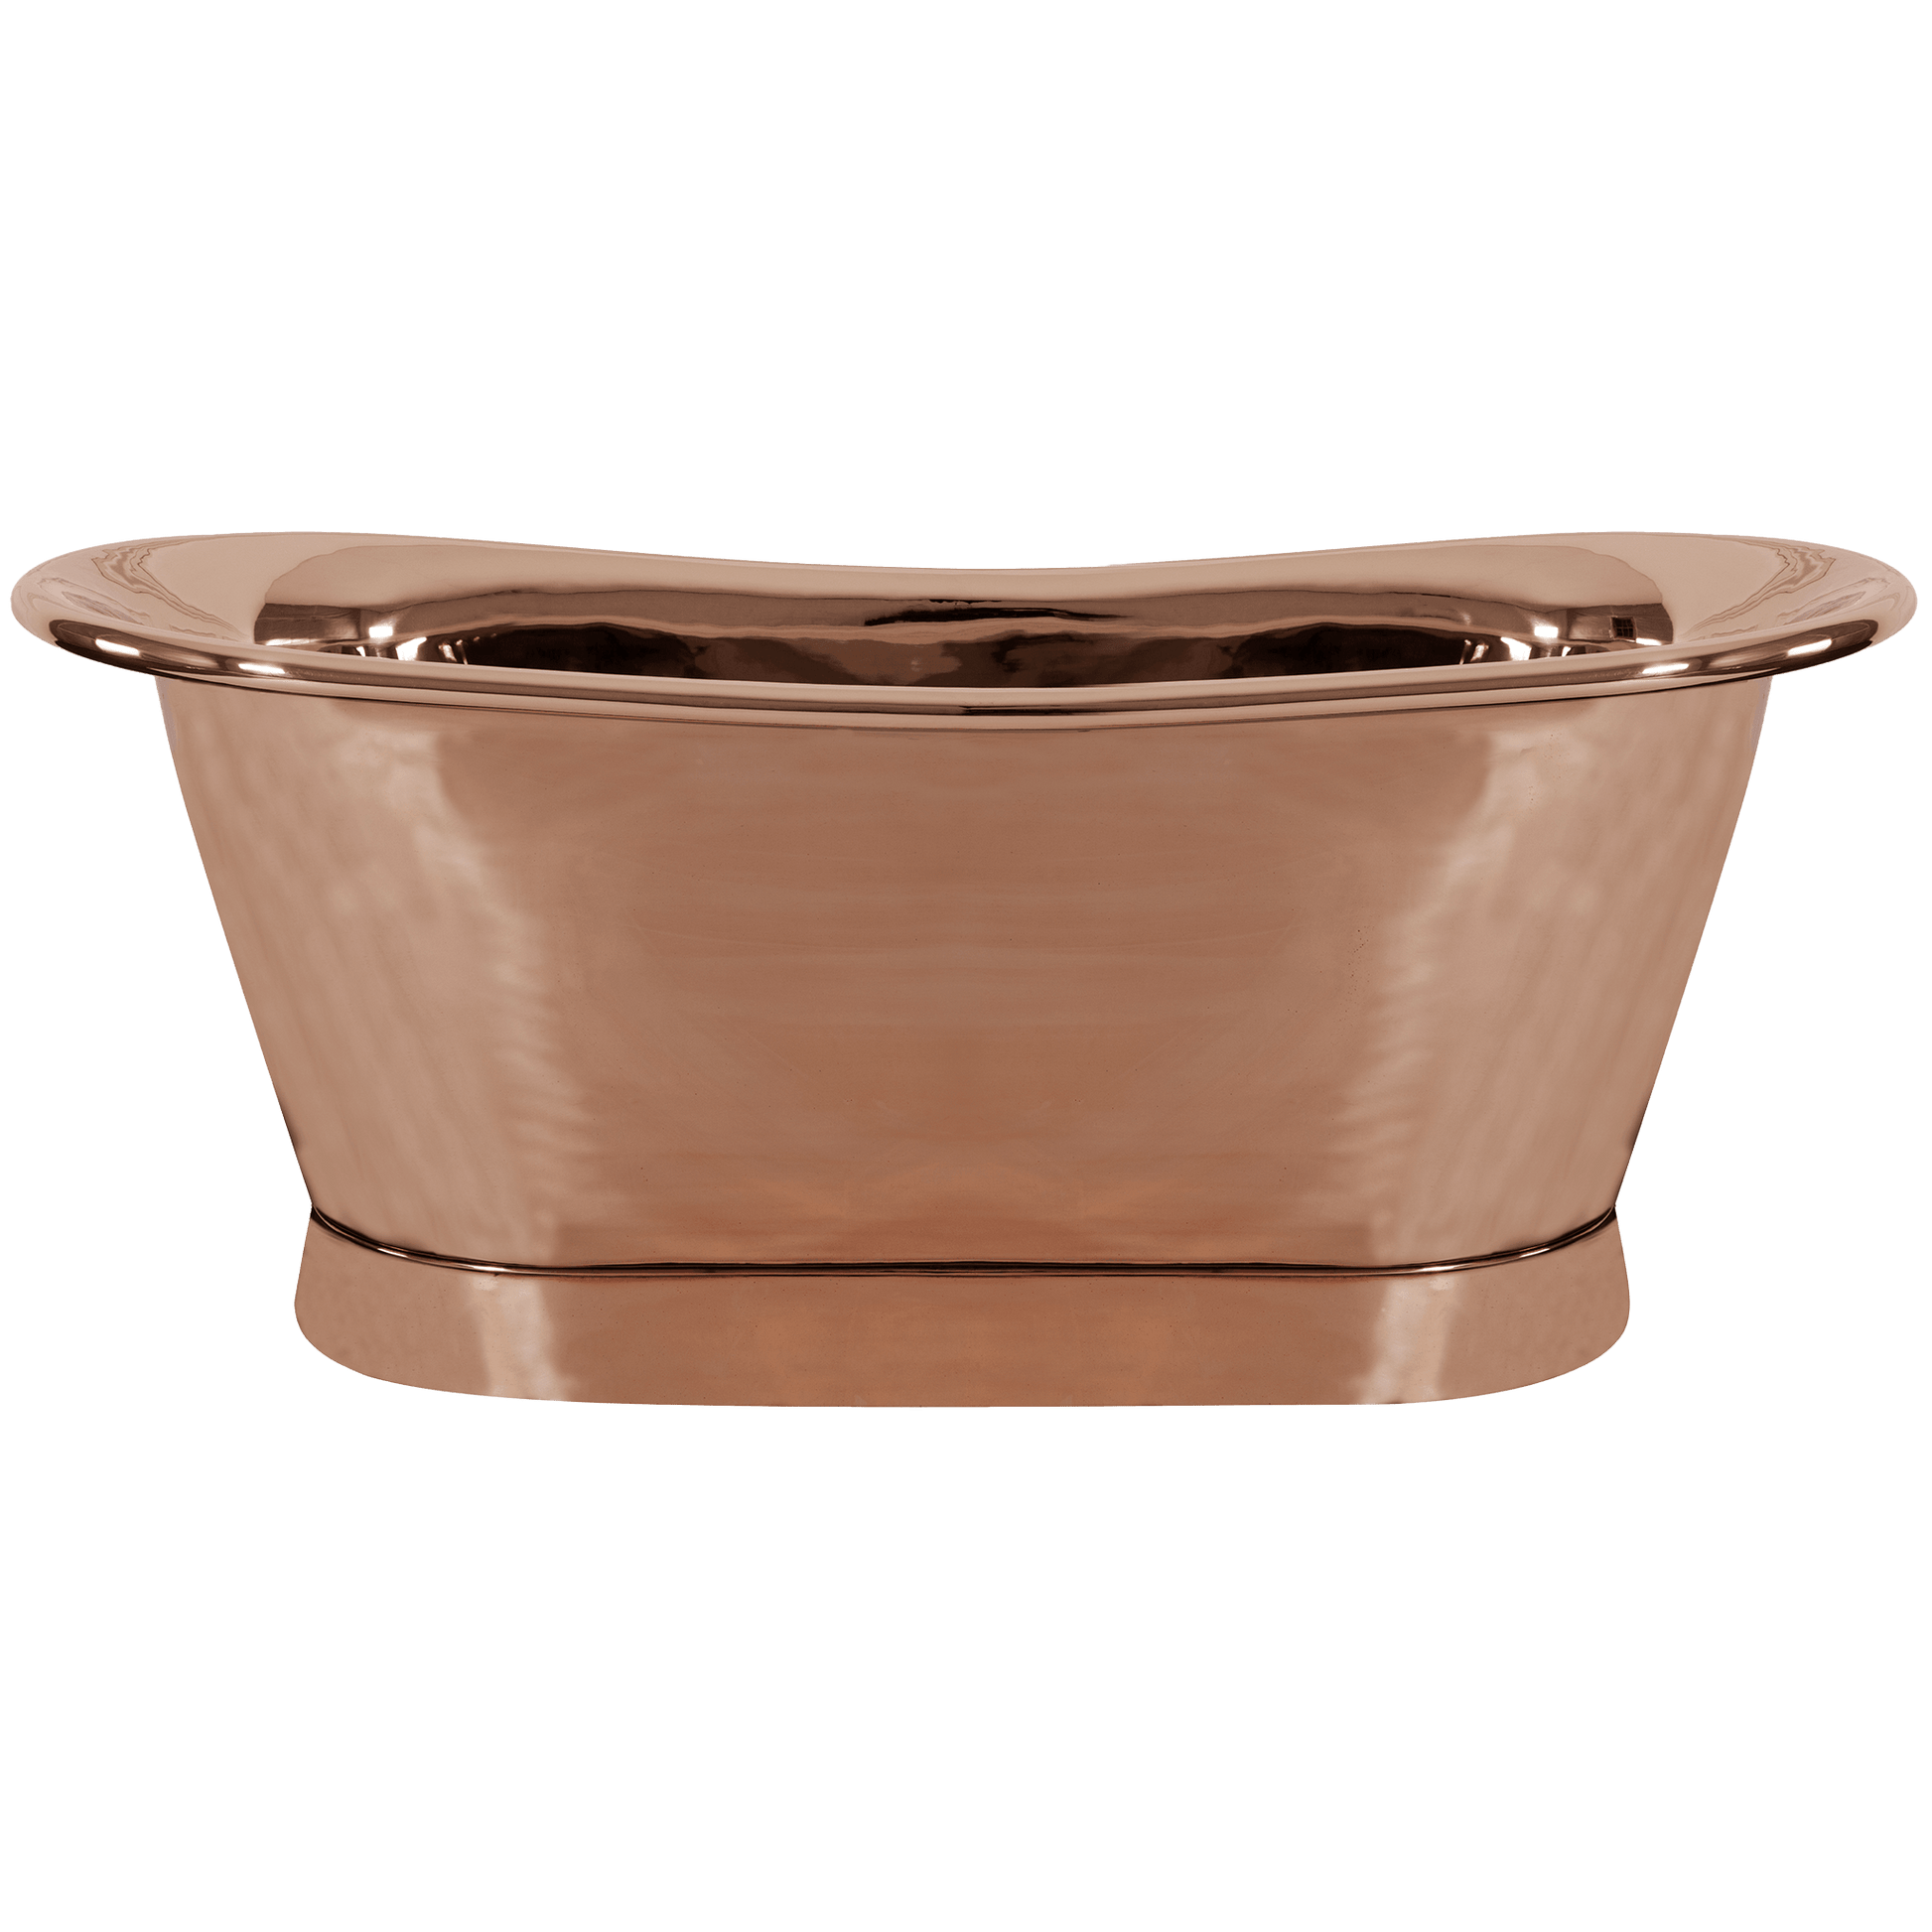 Copper Roll-top bath tub